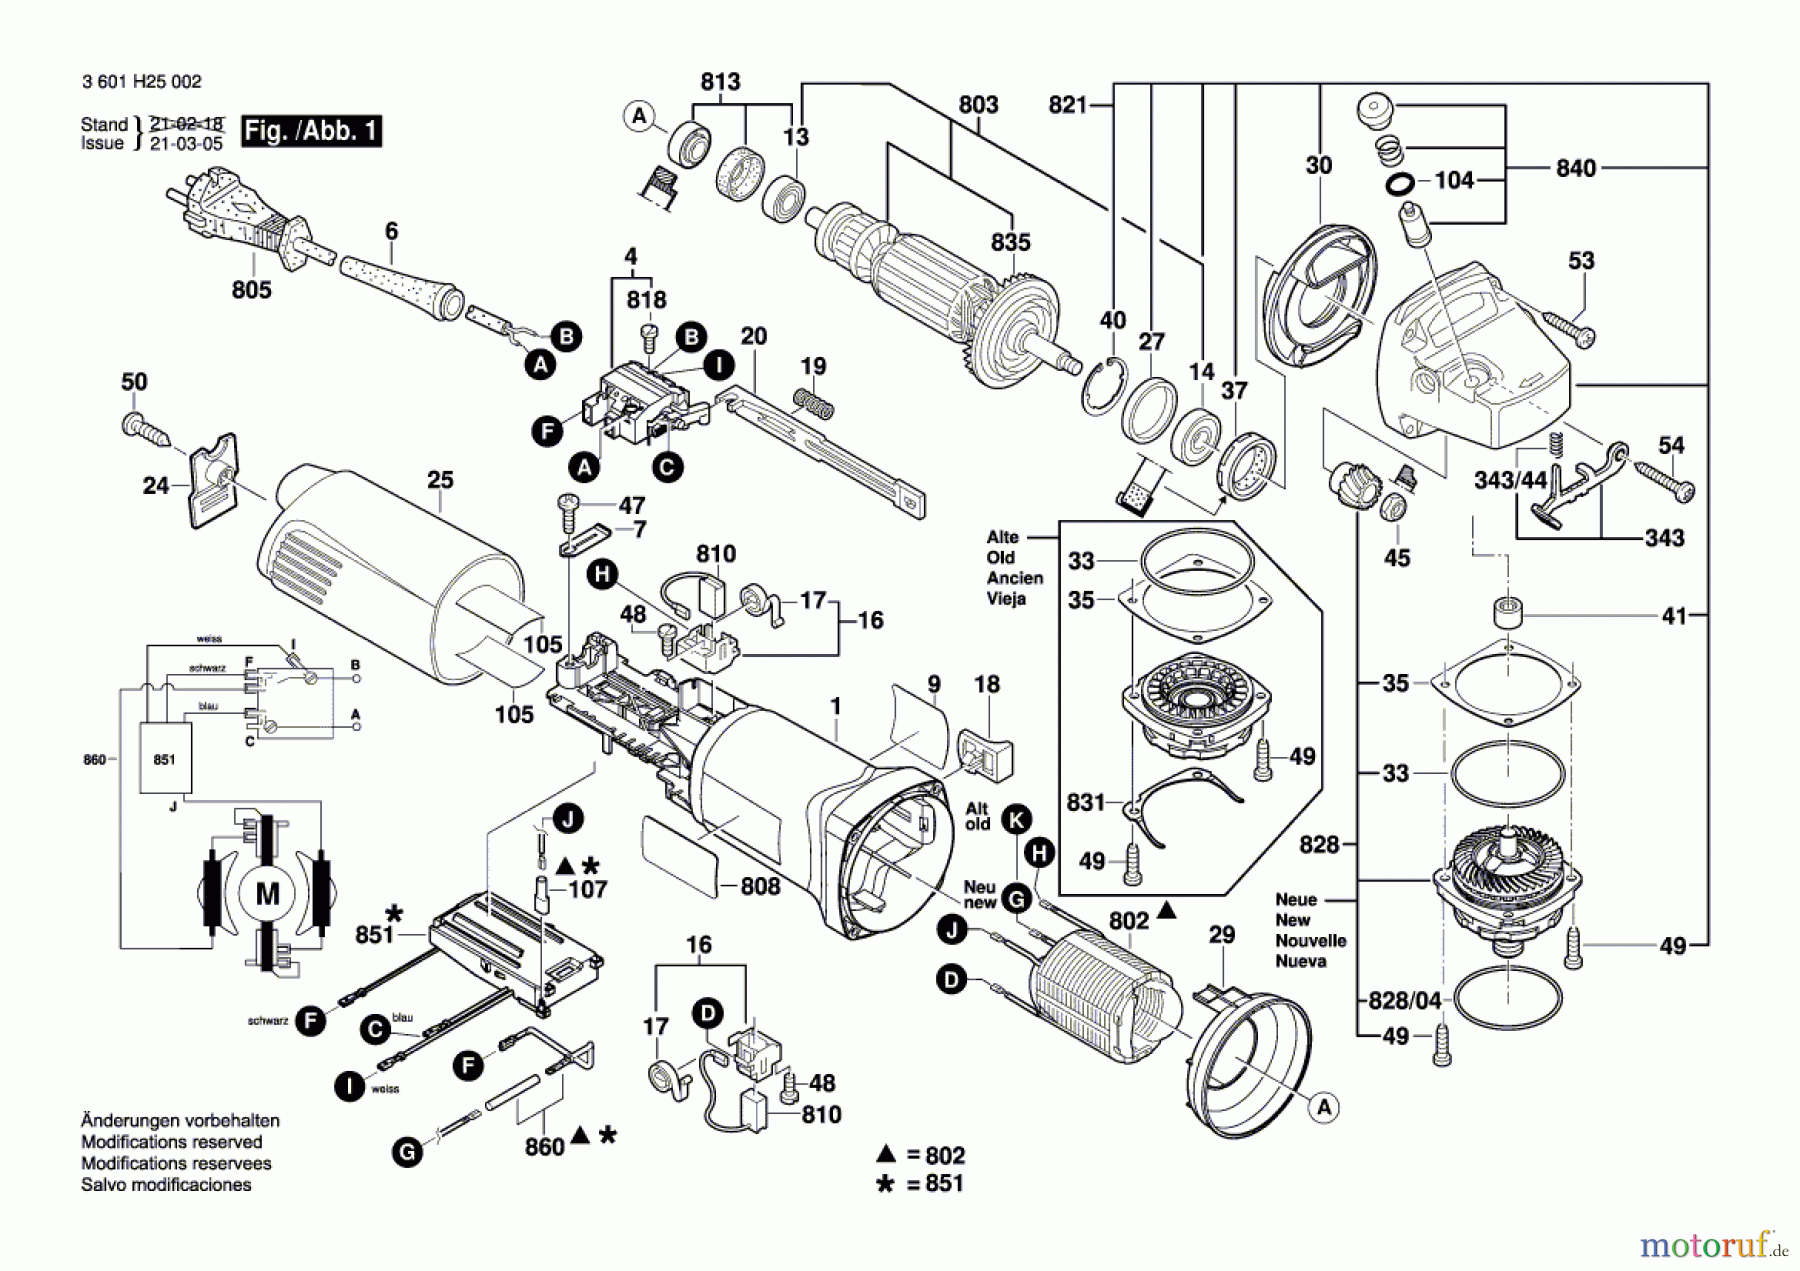  Bosch Werkzeug Winkelschleifer BAG 125-1 E Seite 1